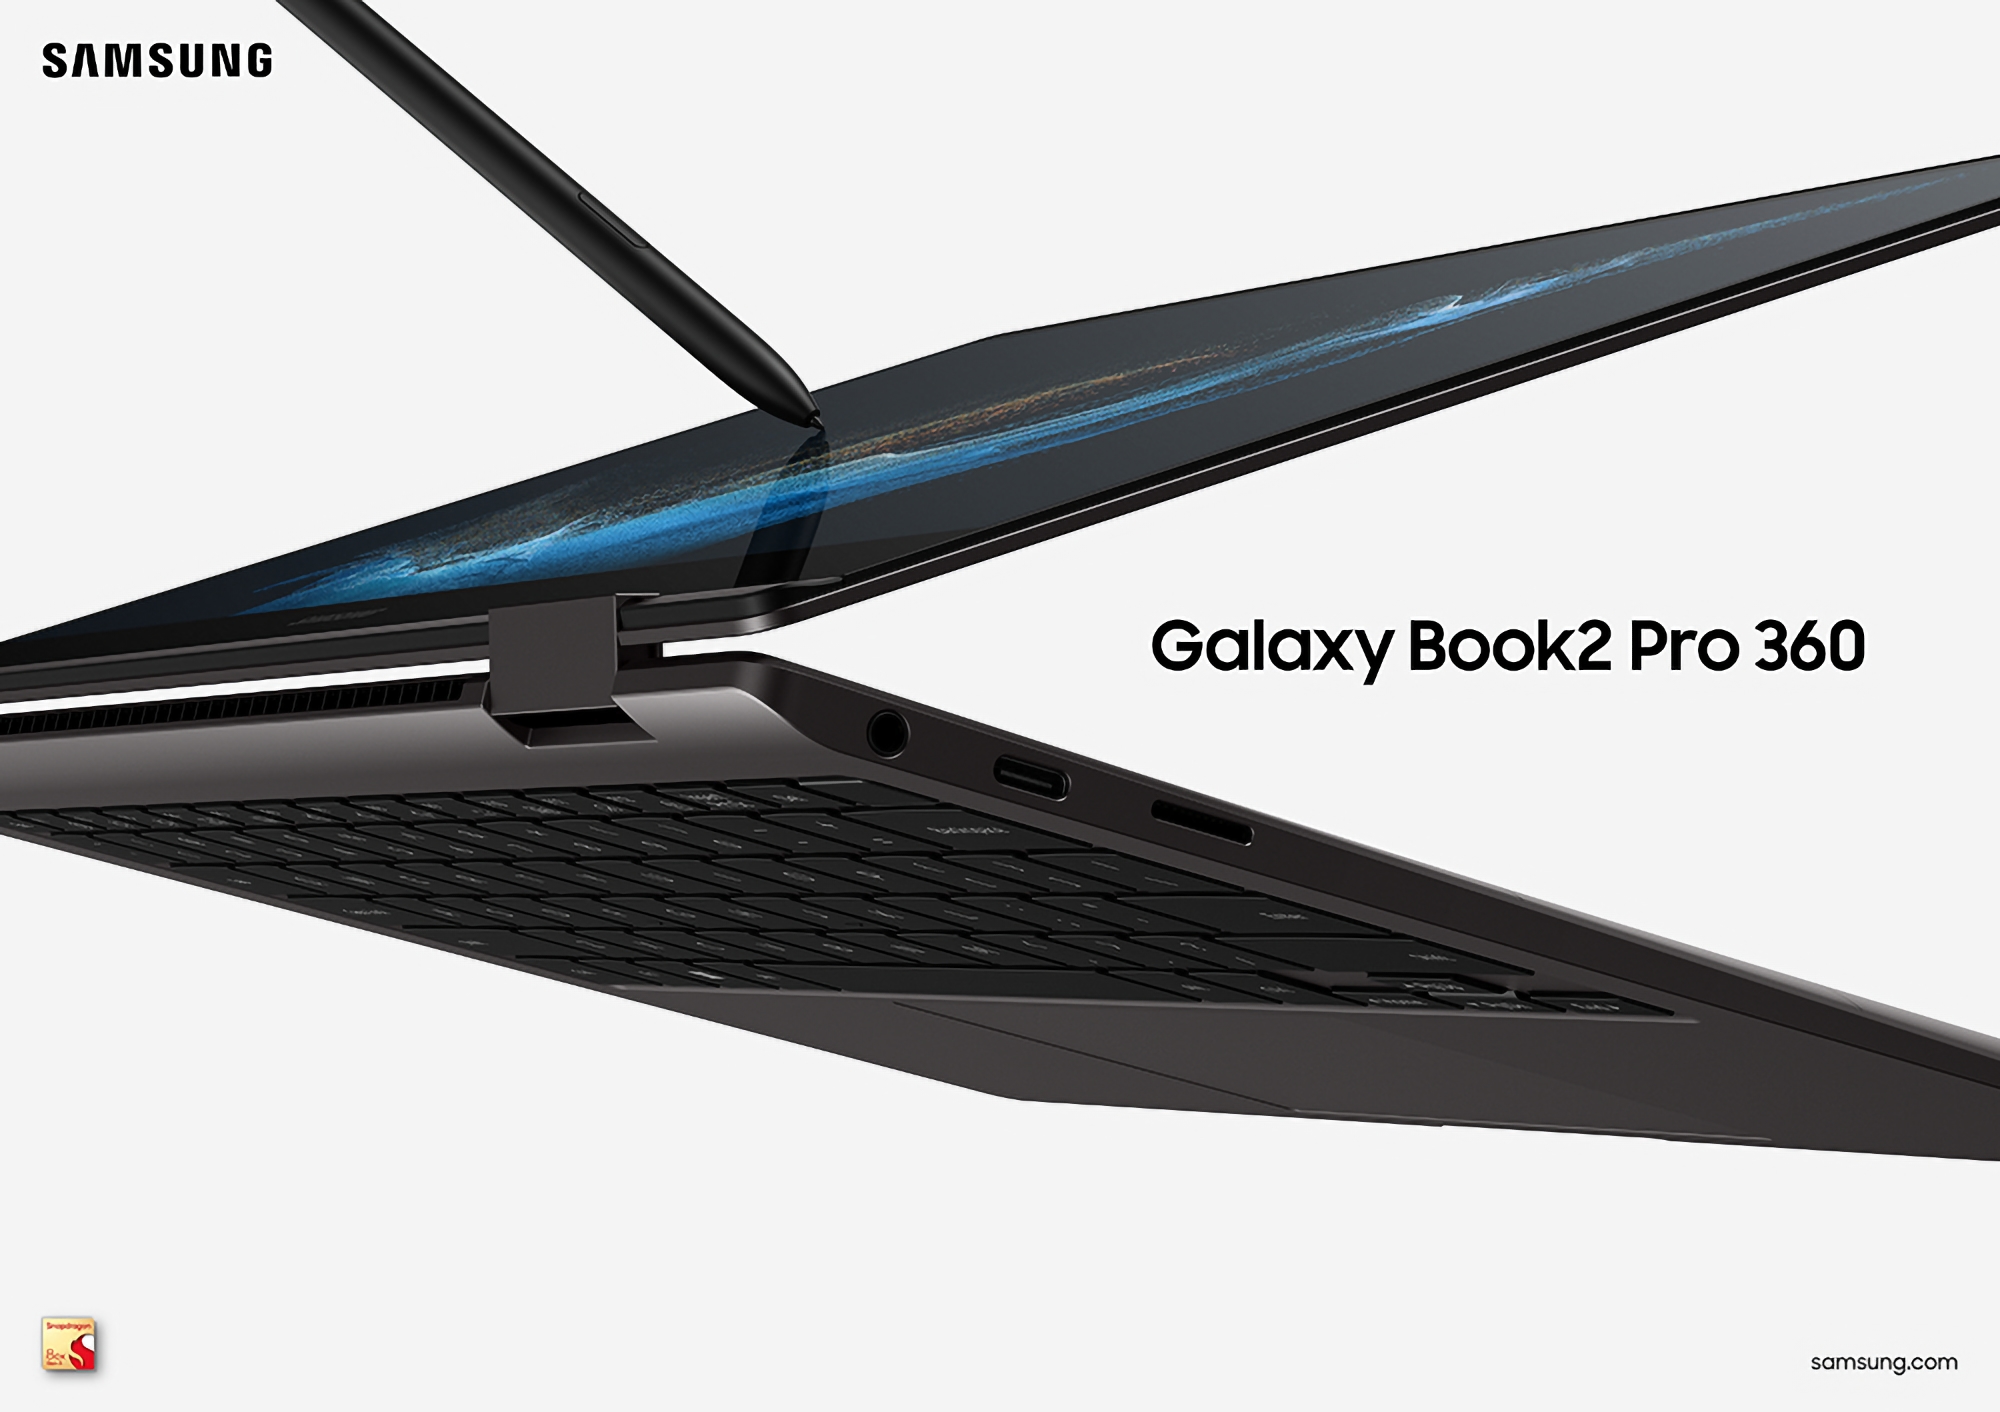 Samsung kündigte eine neue Version des Galaxy Book 2 Pro 360 mit einem ARM-Chip Qualcomm Snapdragon 8cx Gen 3